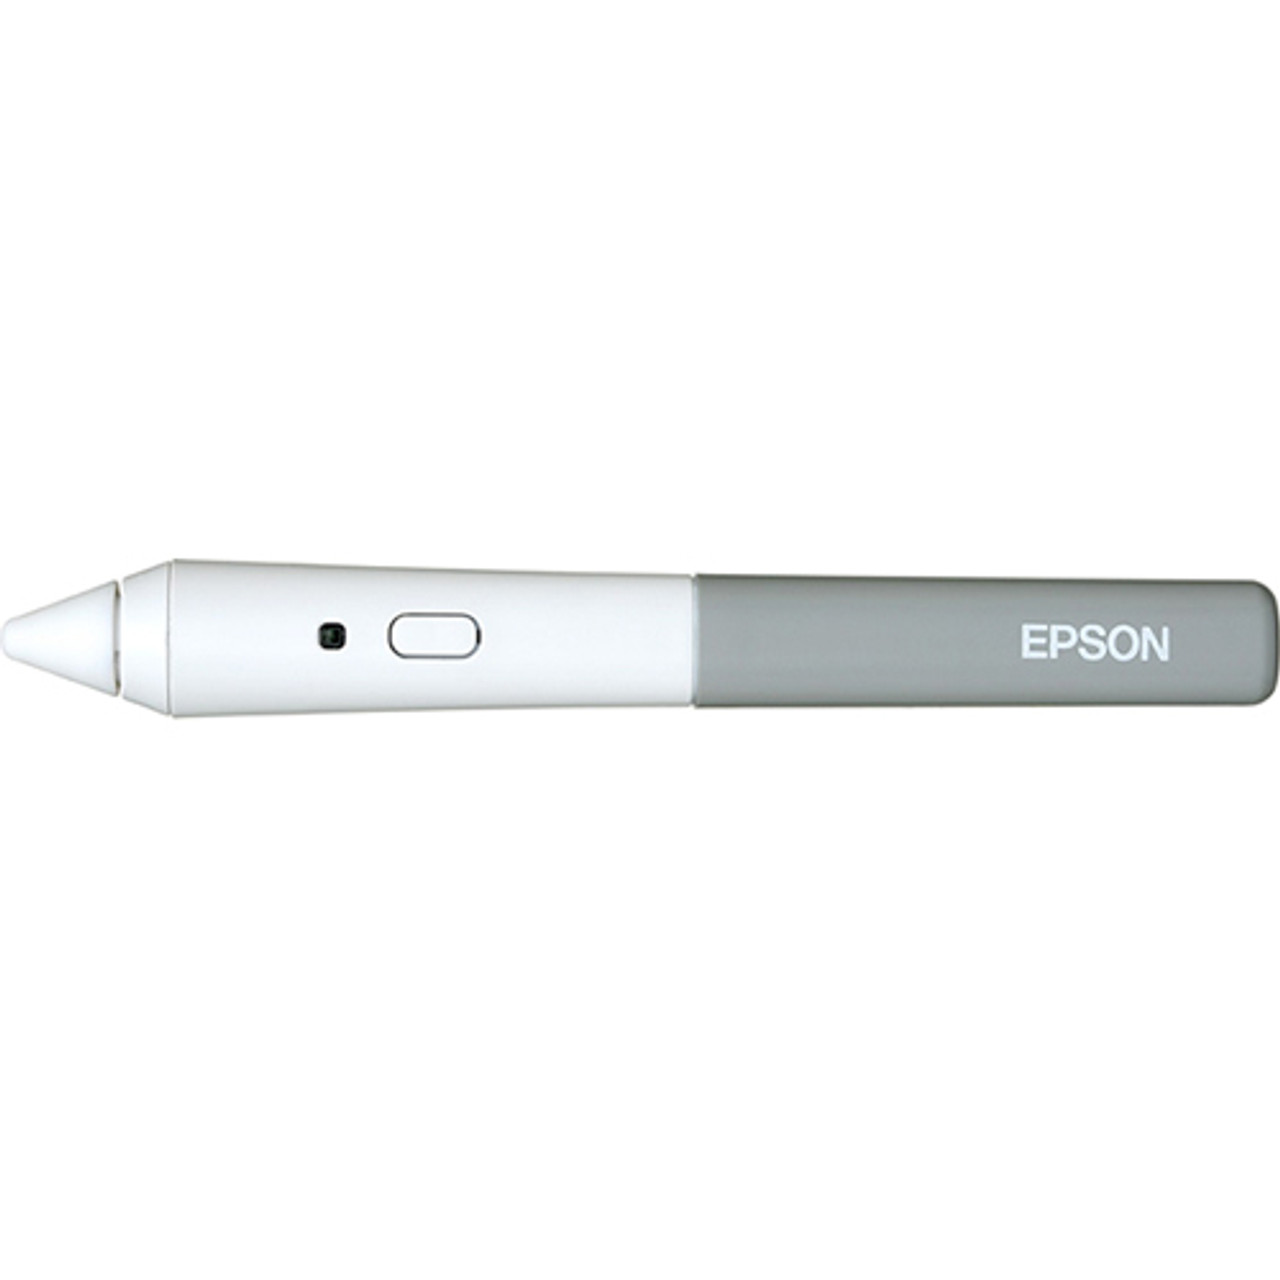 Epson V12H378001